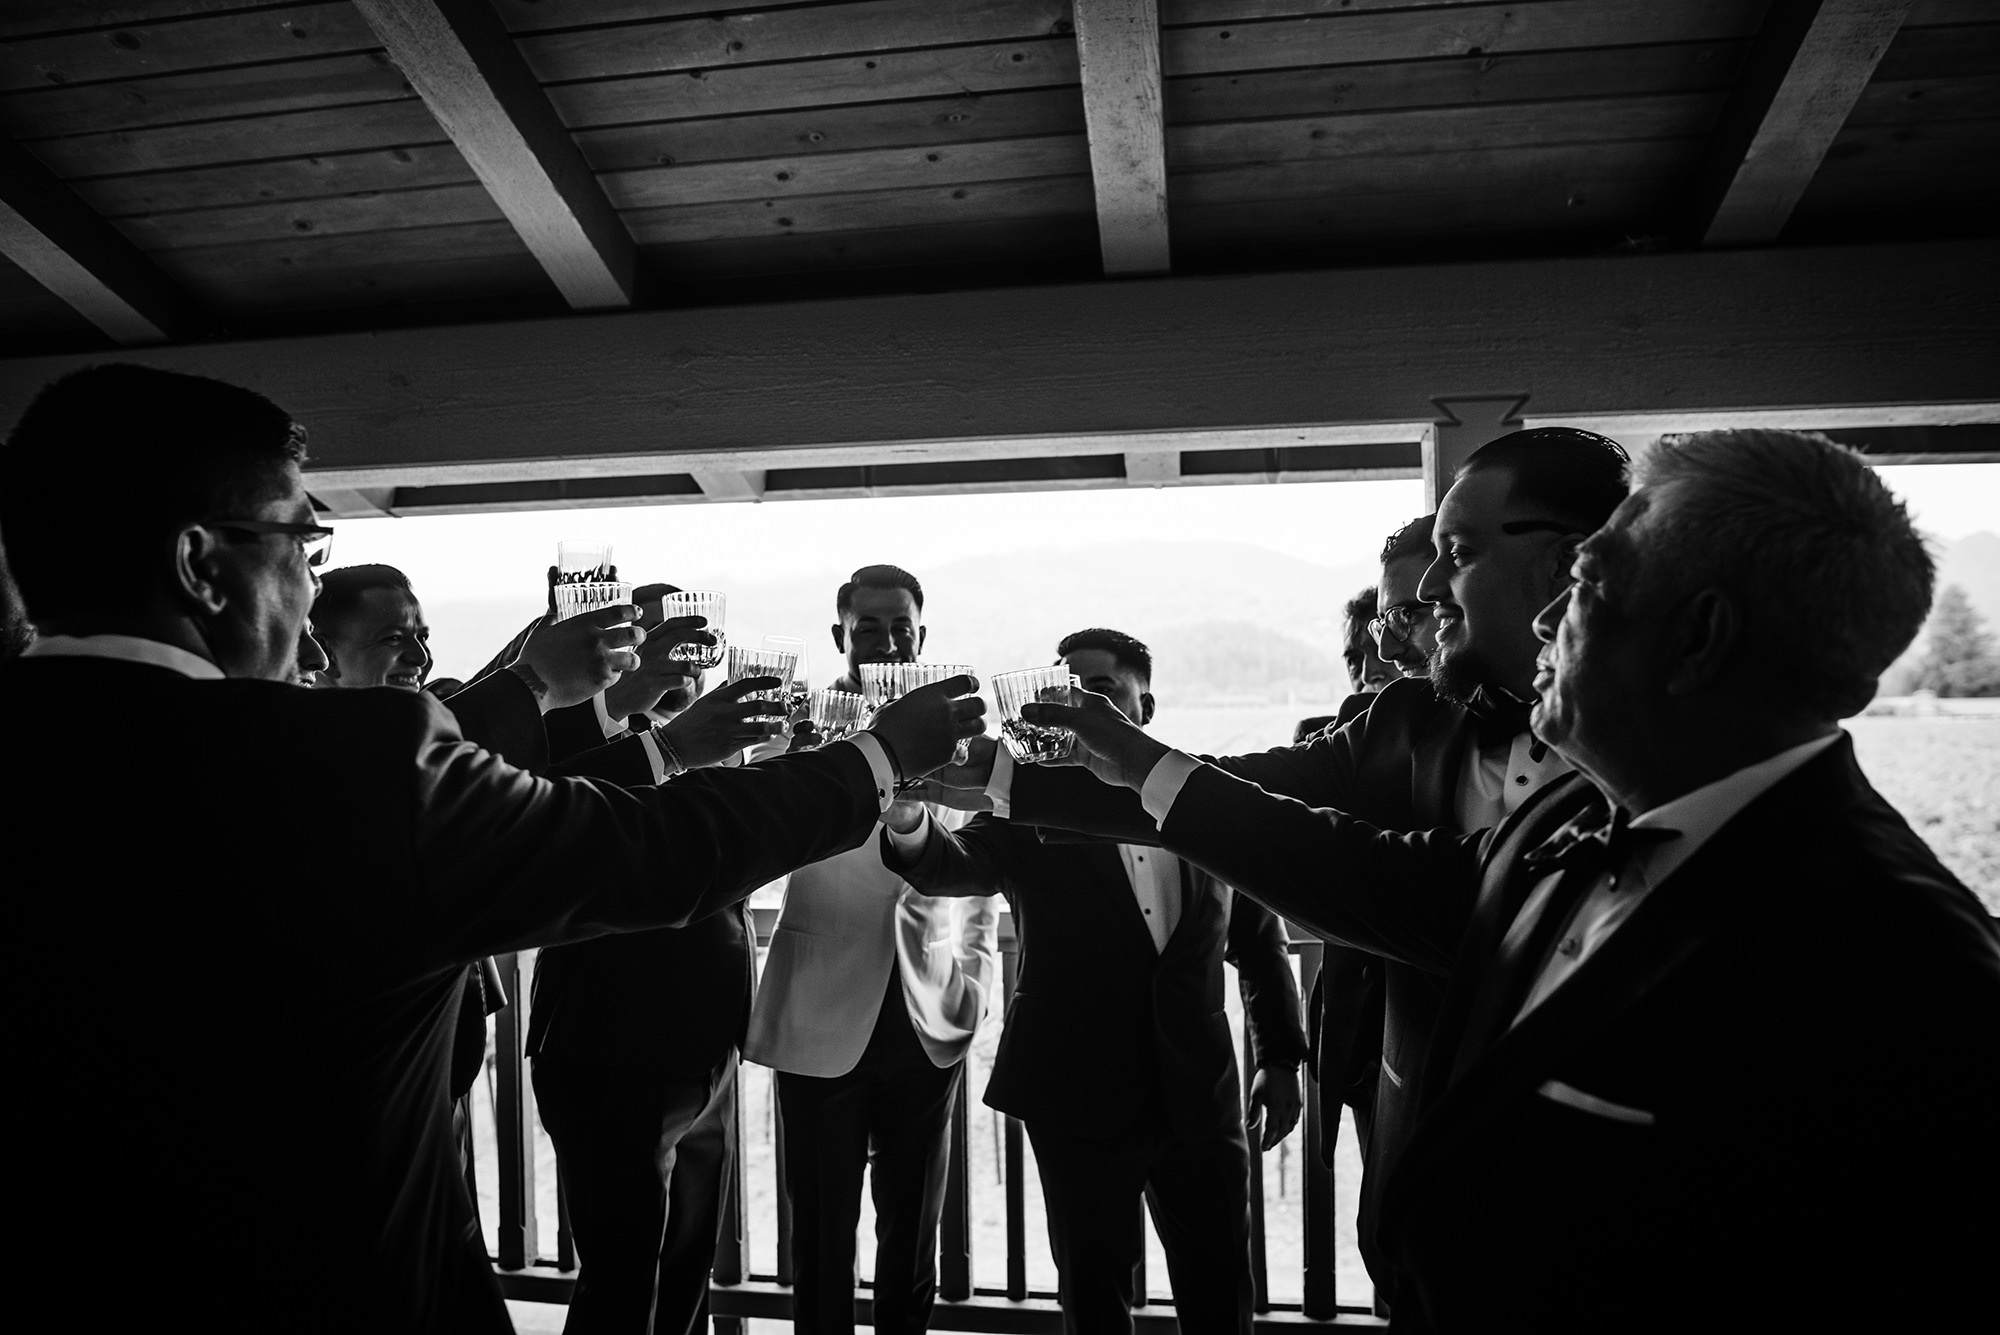 Wedding crew toasting groom at Harvest Inn.